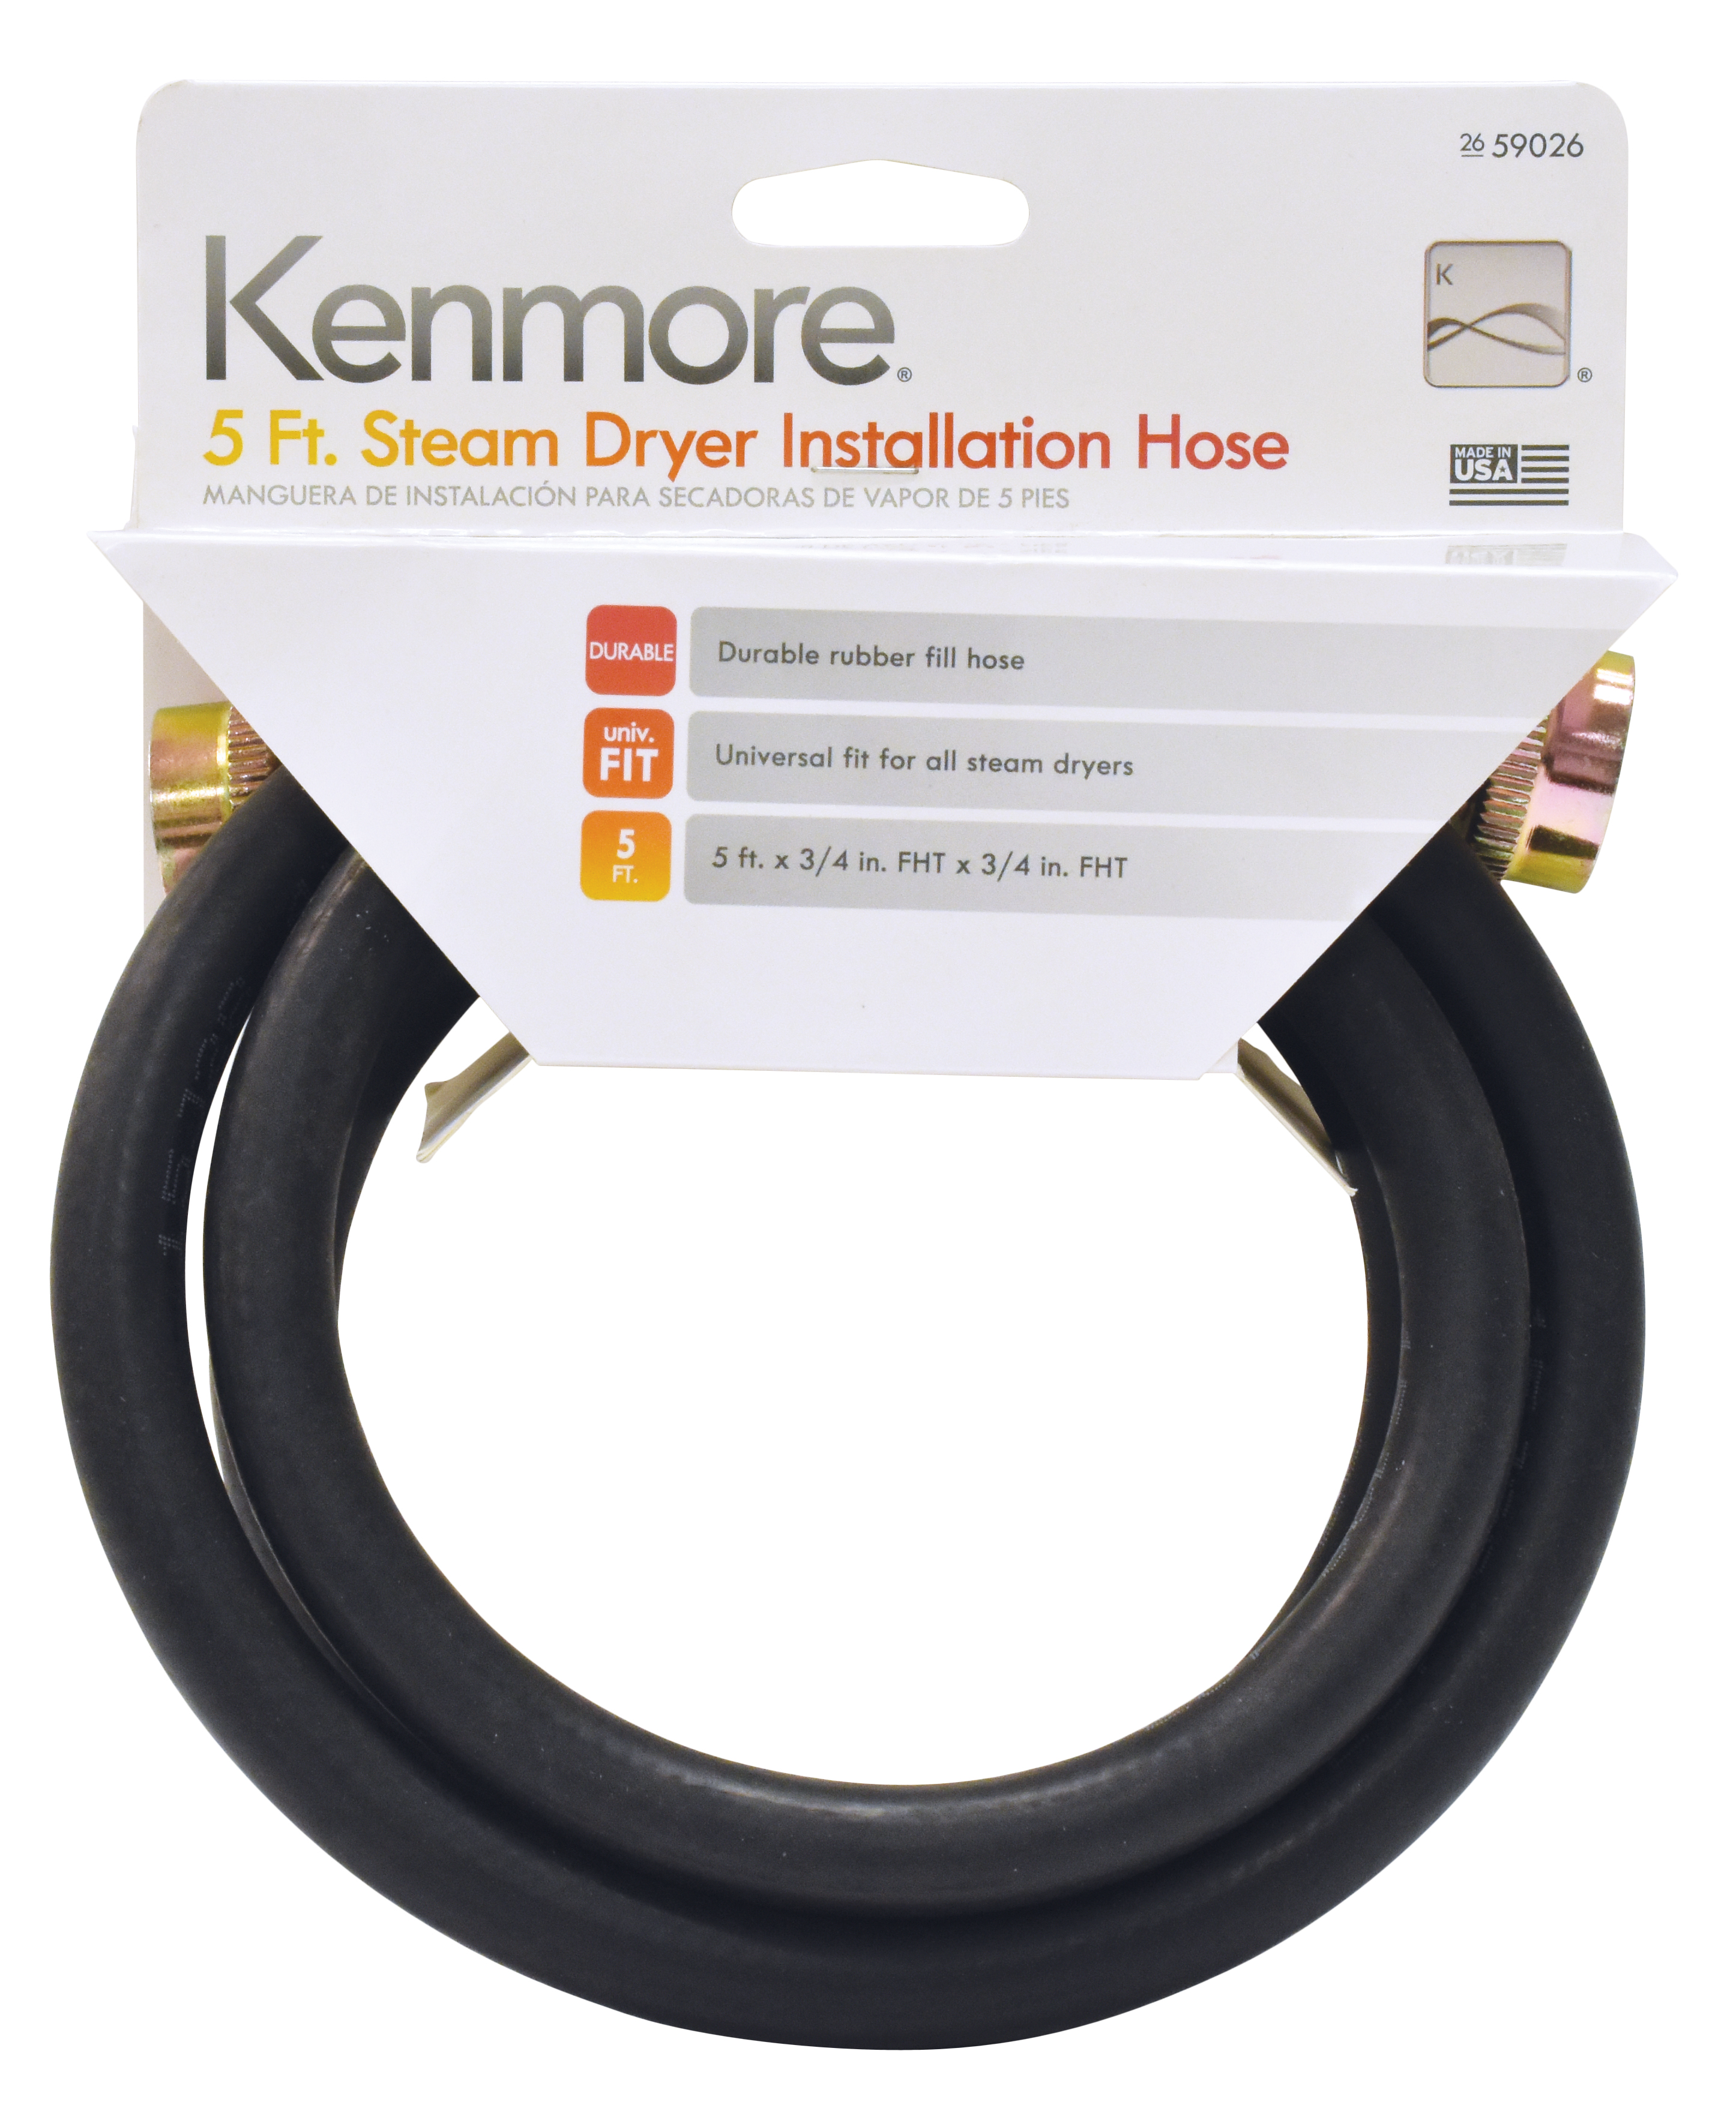 Kenmore 59026 5' Steam Dryer Installation Hose